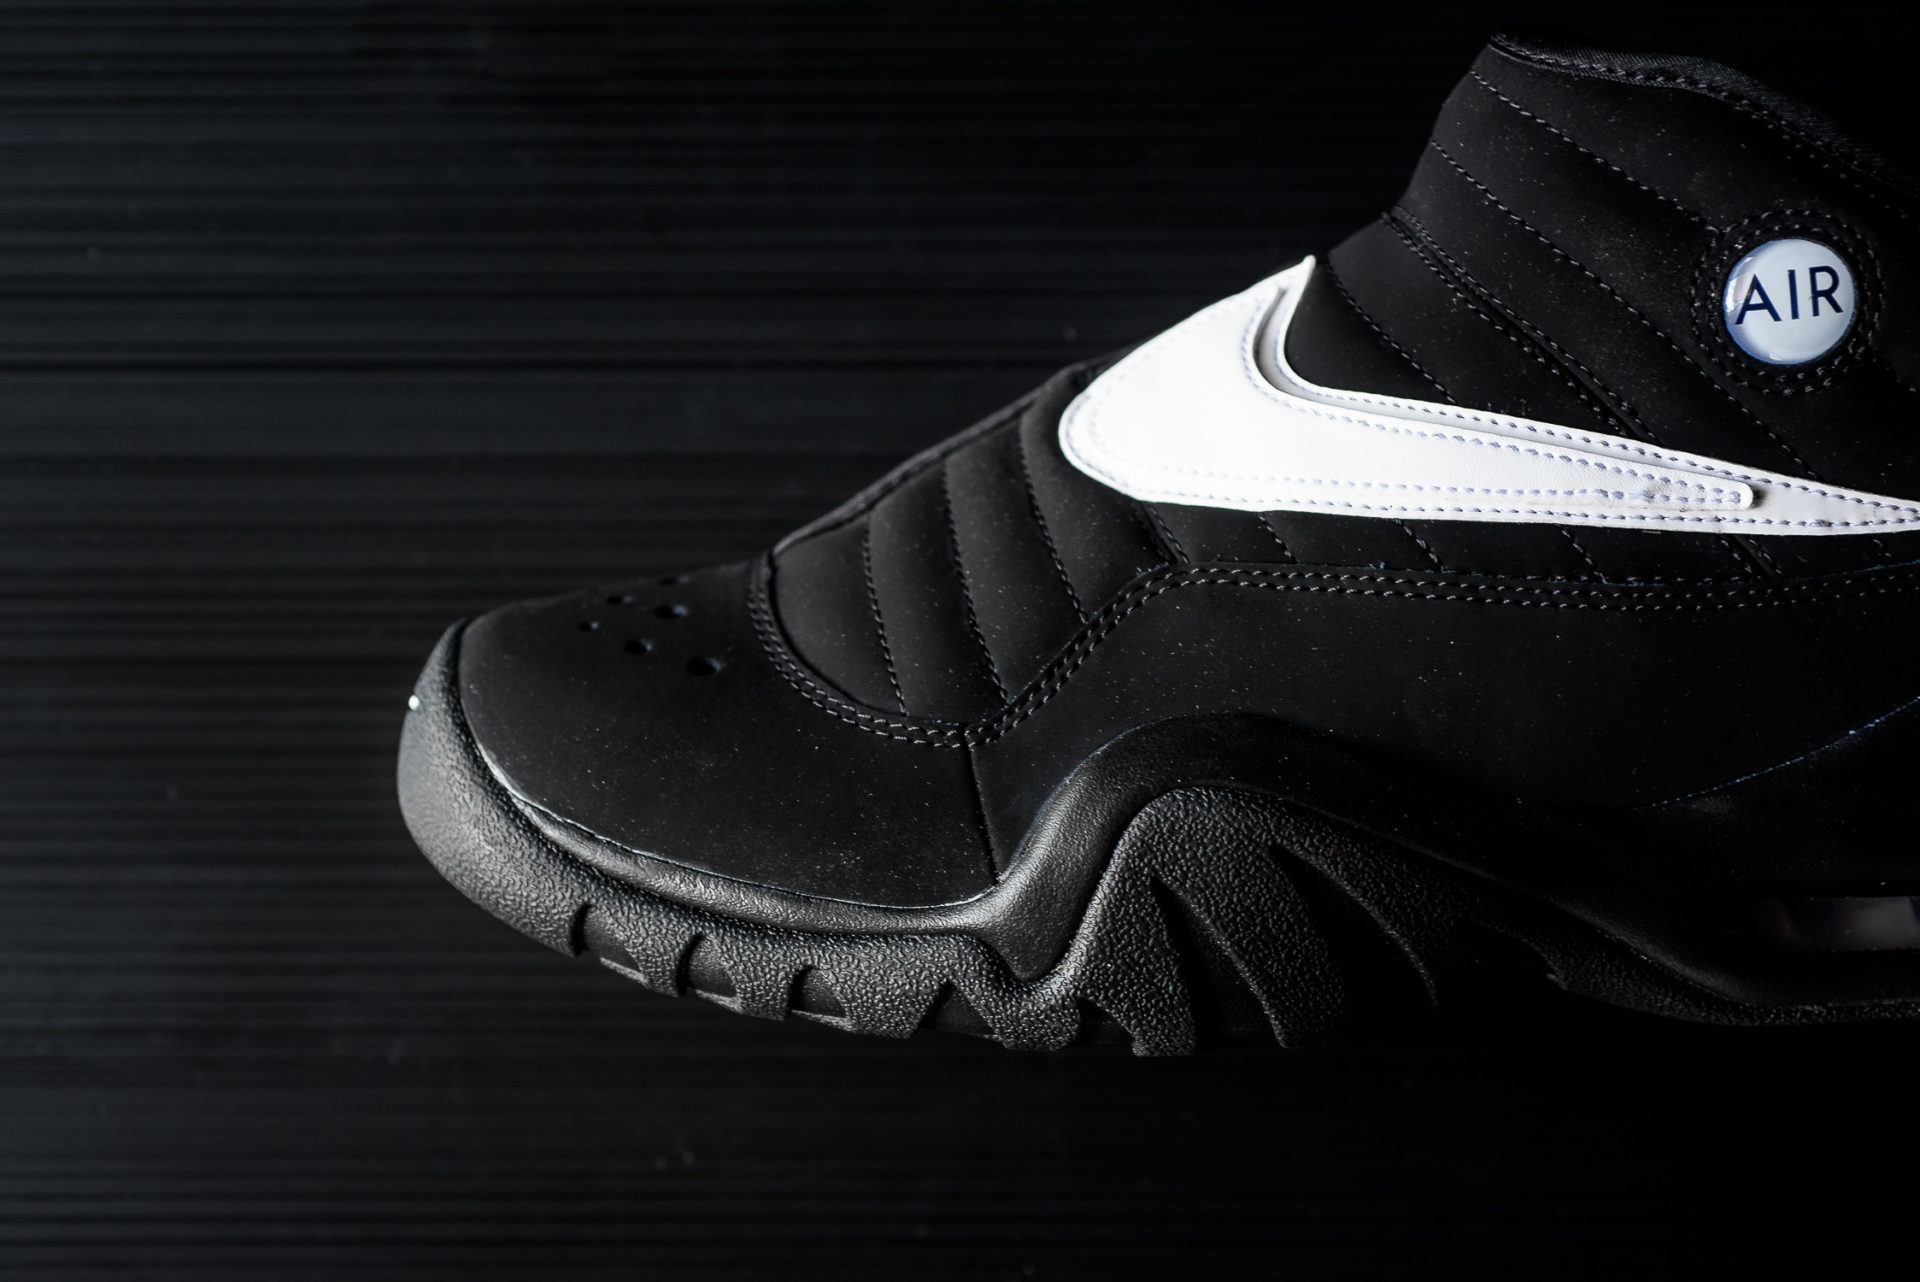 Nike Air Shake NDestrukt Black/White Drops This Week | Nice Kicks